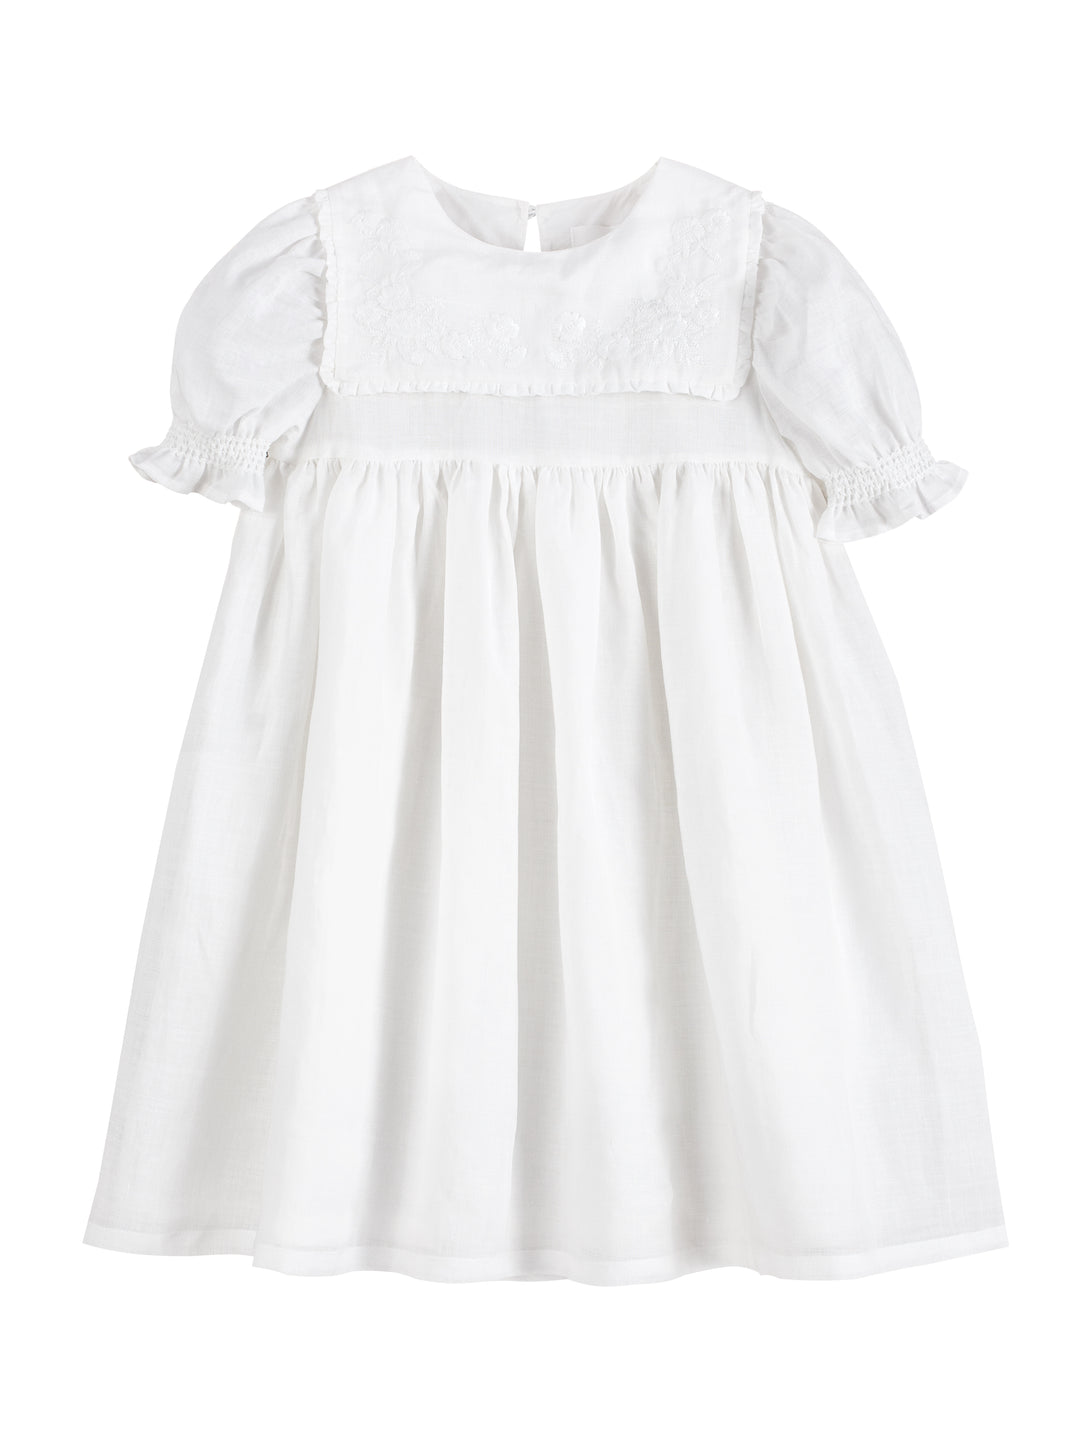 KOKORO DRESS-White